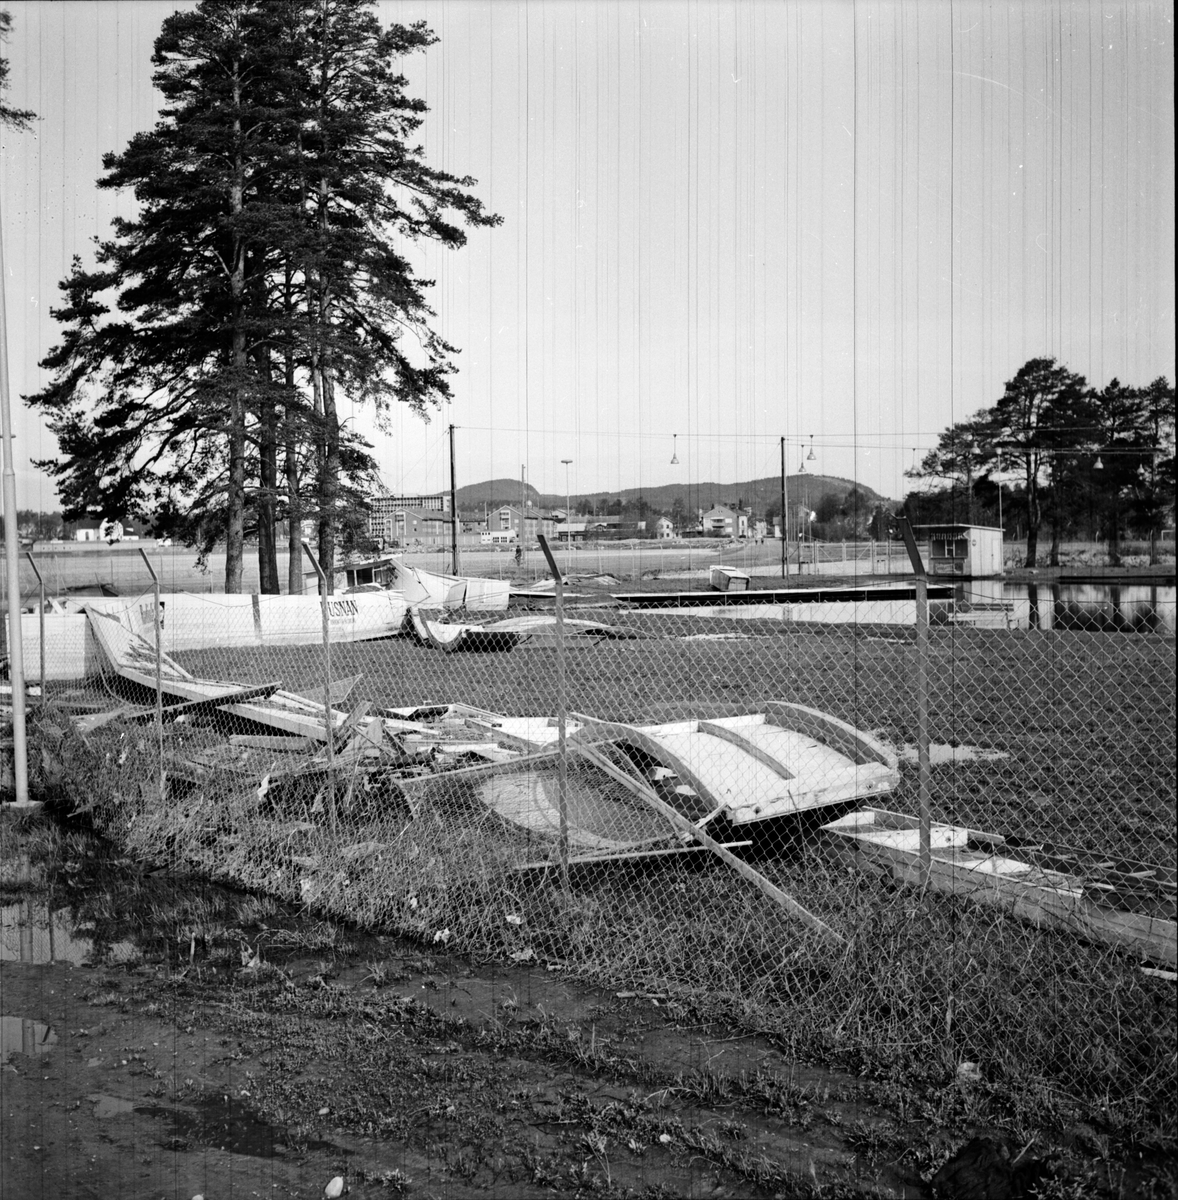 Långnäs idrottsplats,
Vårflodens verk,
27 Maj 1966
